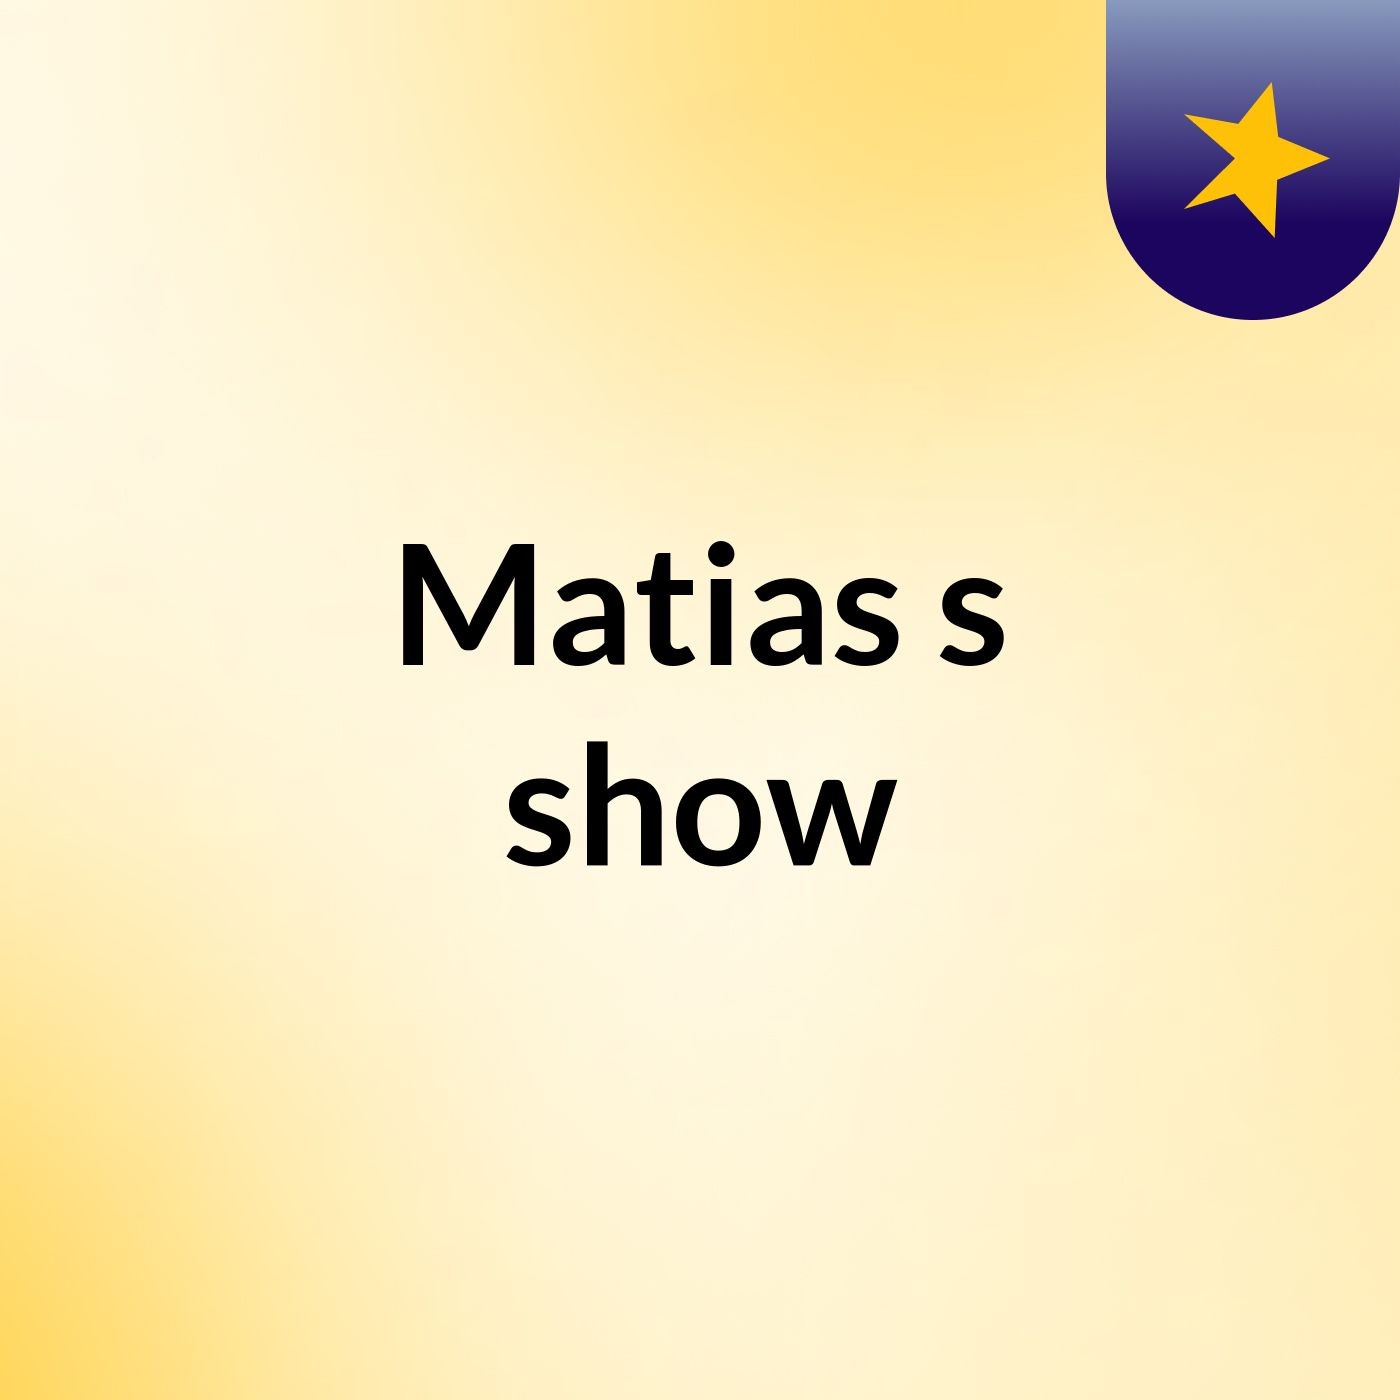 Matias's show